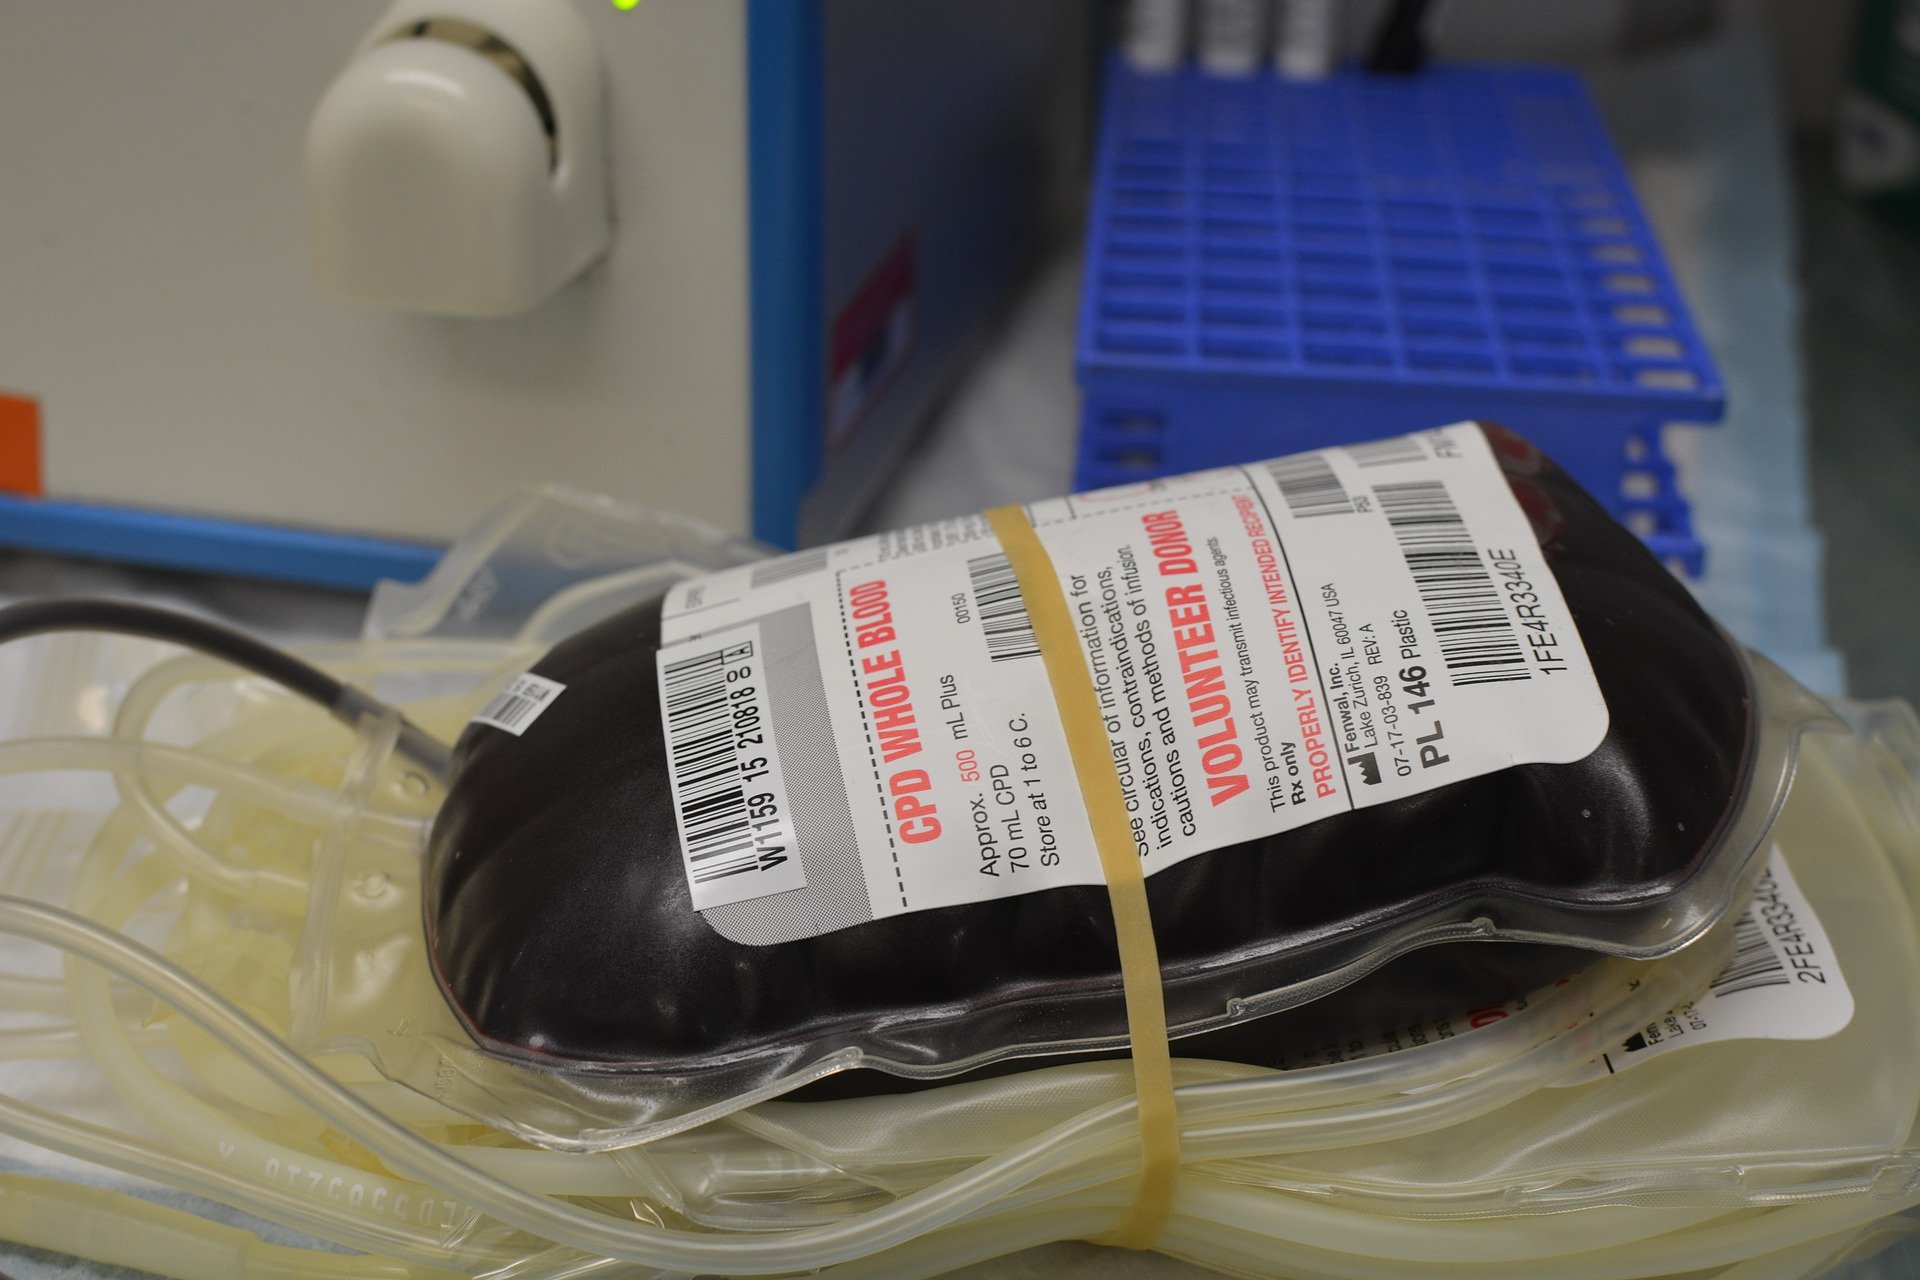 Llamamiento a dar sangre: sólo hay reservas para 5 días